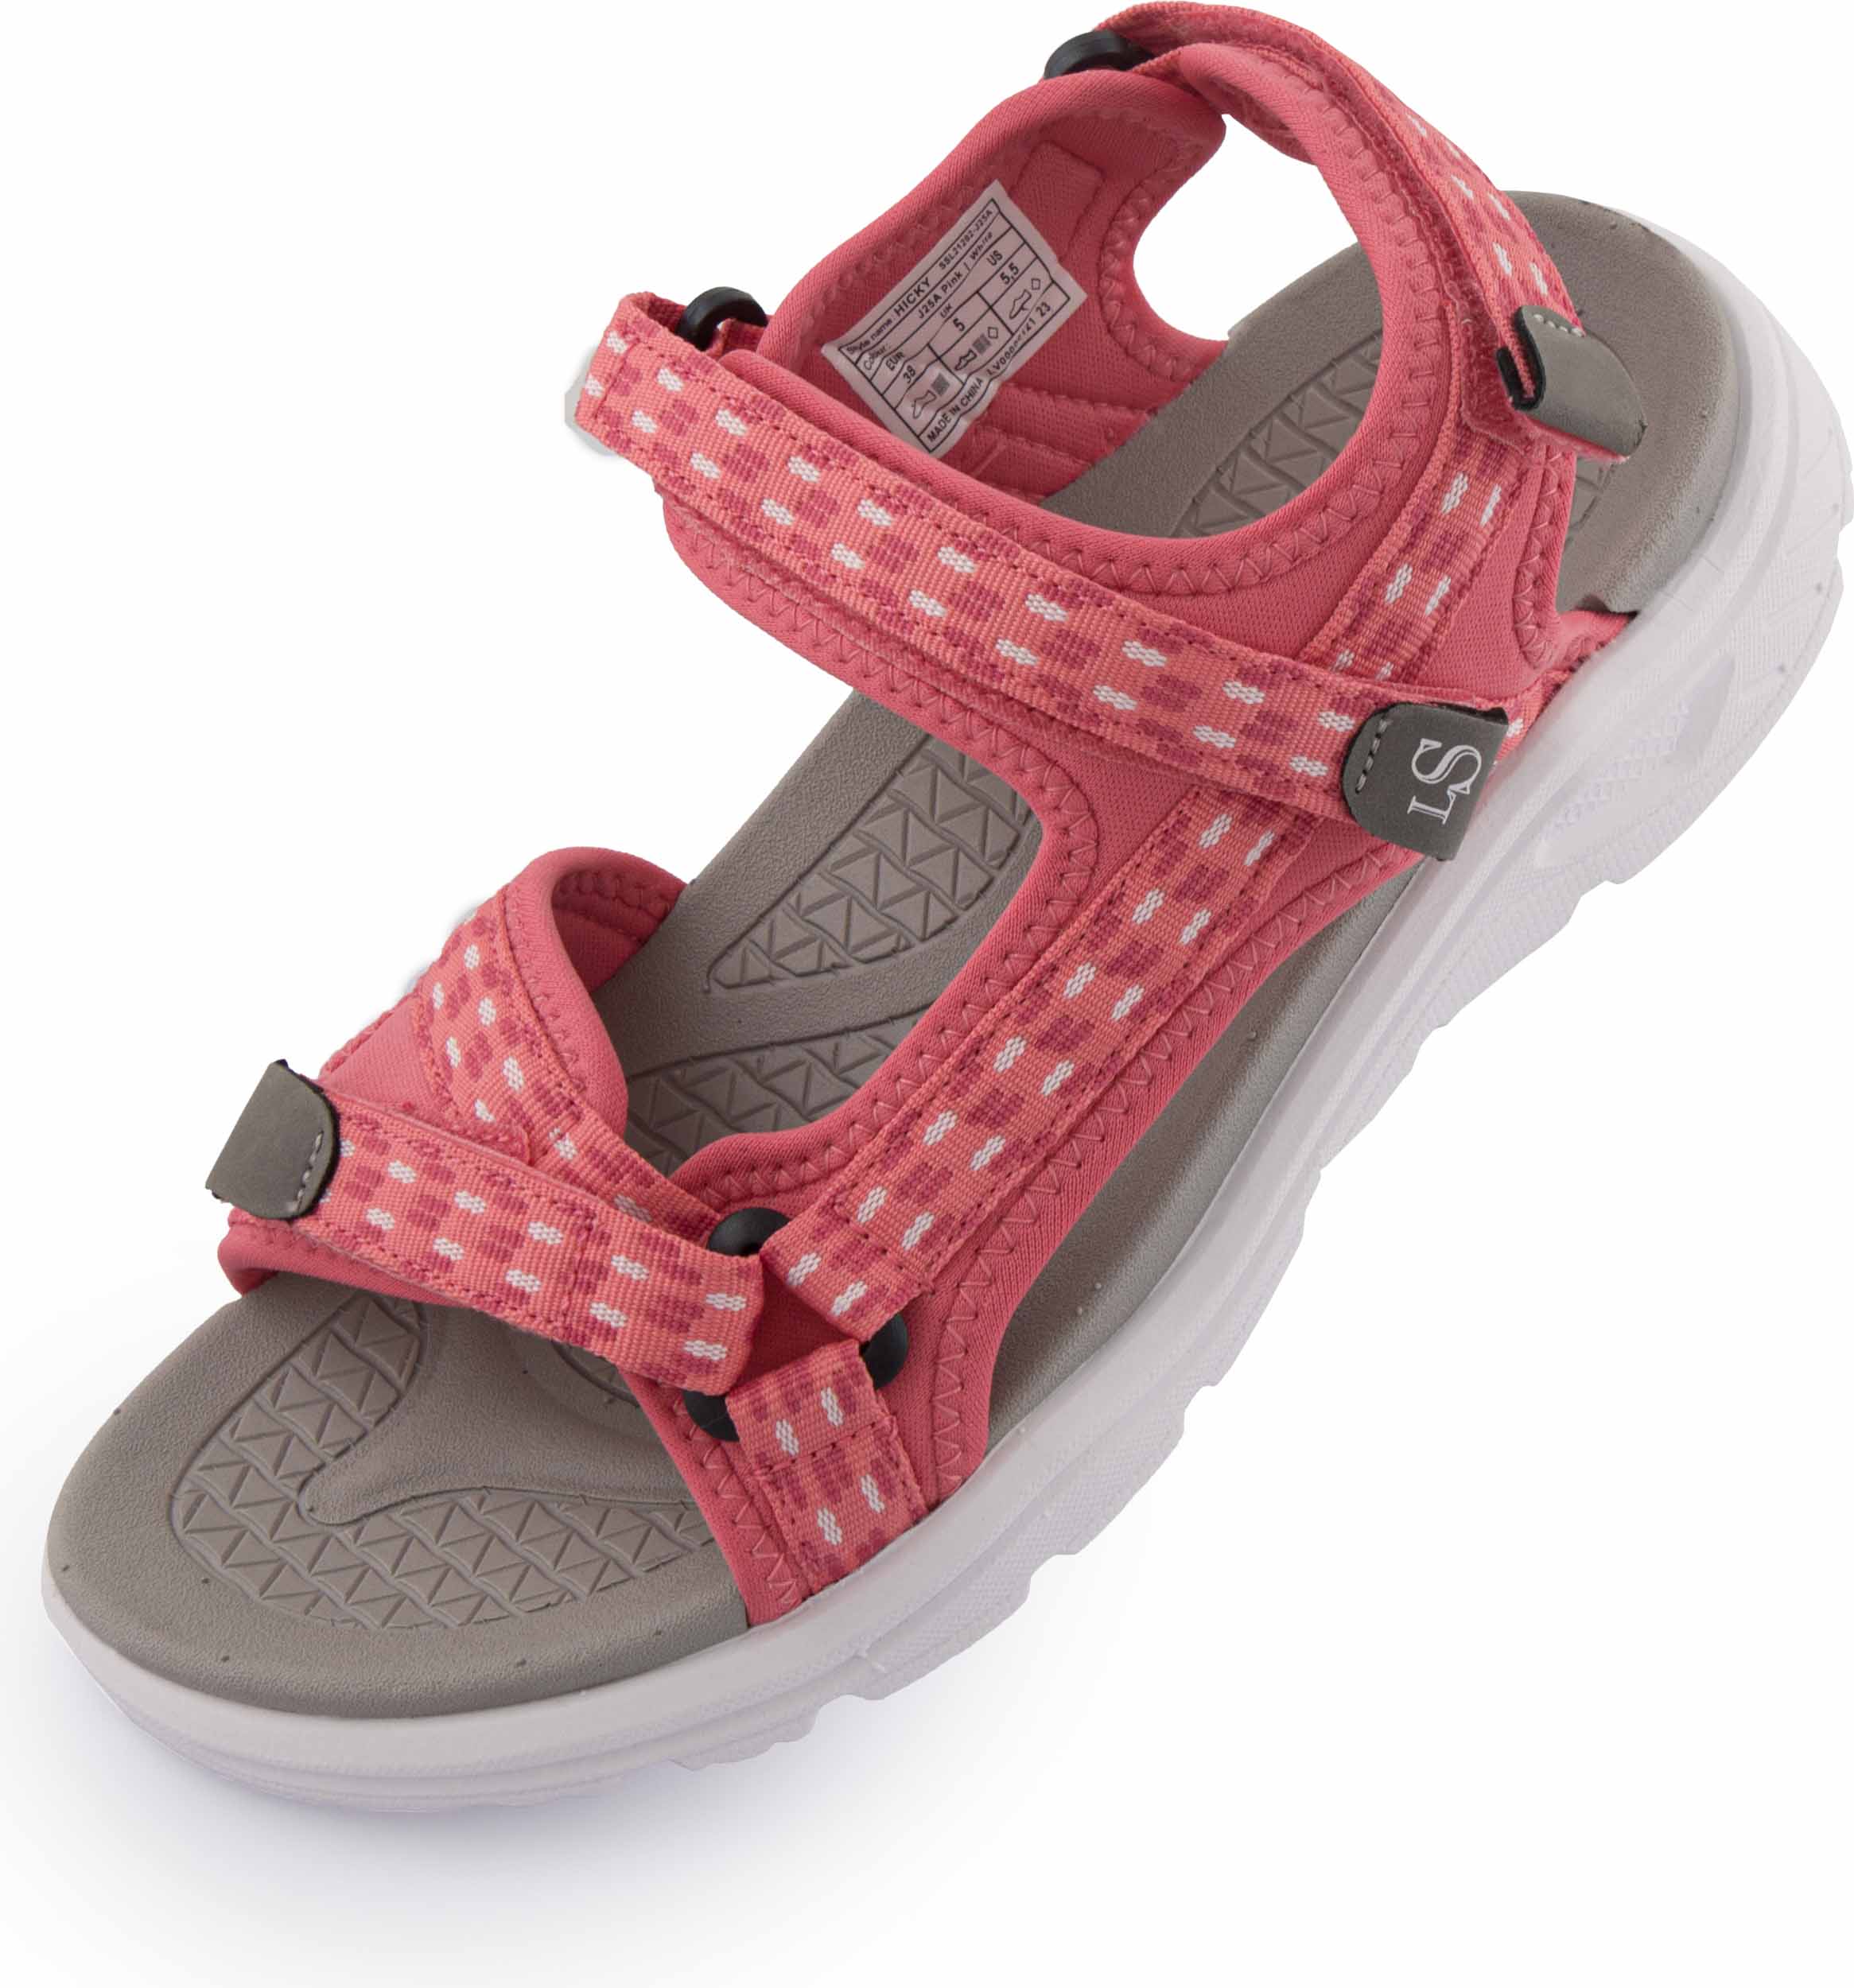 Dámské sandály Loap Hicky pink|41